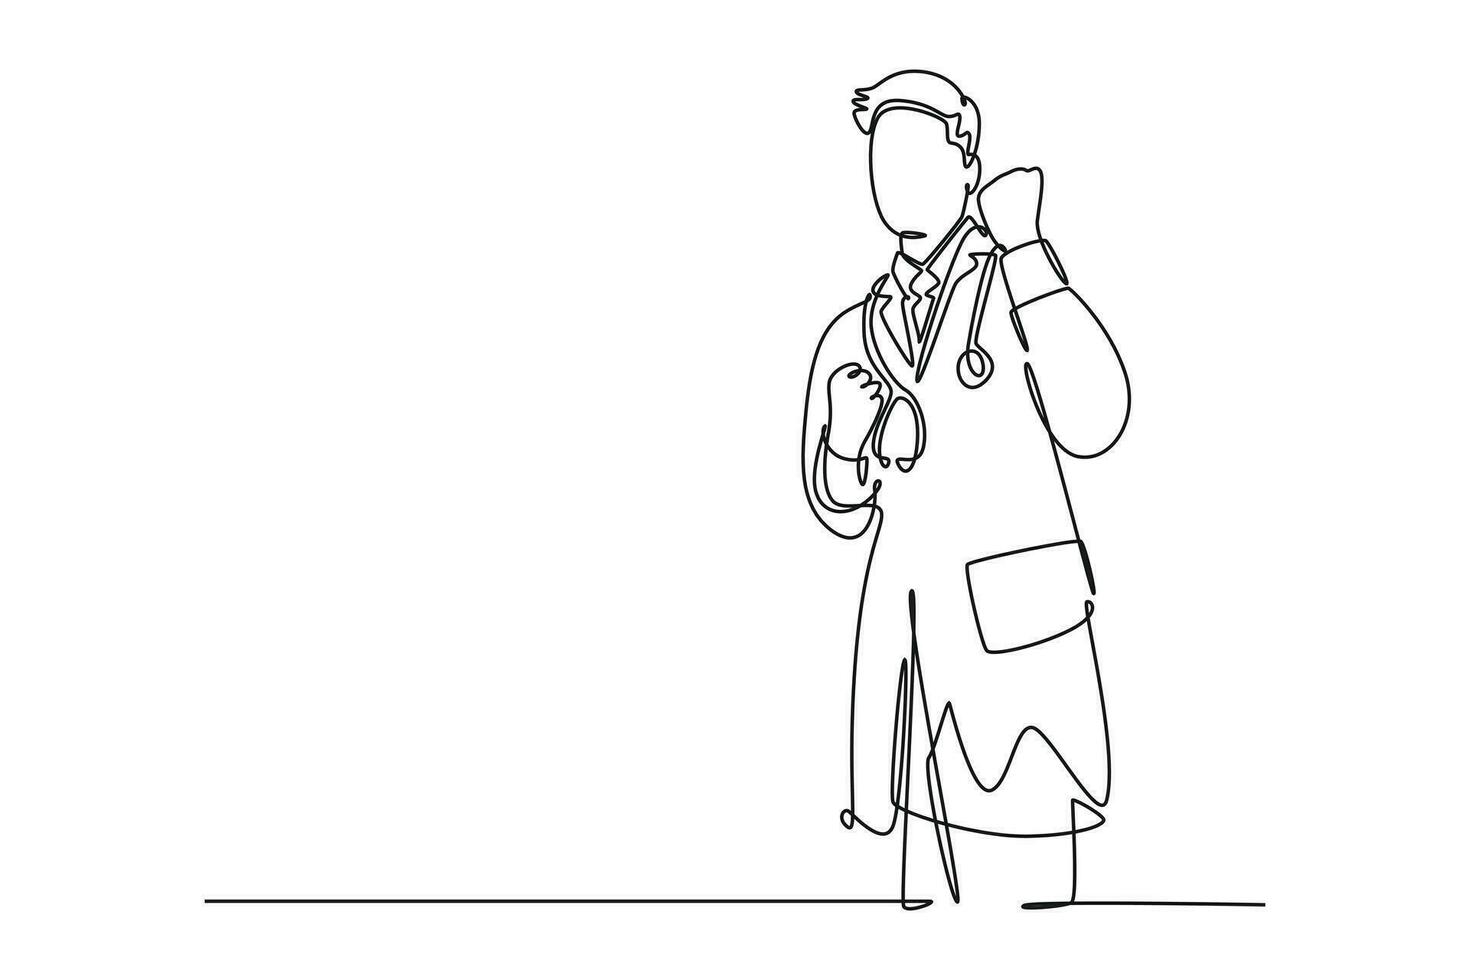 kontinuierlich einer Linie Zeichnung von jung glücklich männlich Arzt Faust seine Hände zu das Luft zu feiern seine Erfolg Behandlung das geduldig. medizinisch Gesundheit Pflege. Single Linie zeichnen Design Vektor Grafik Illustration